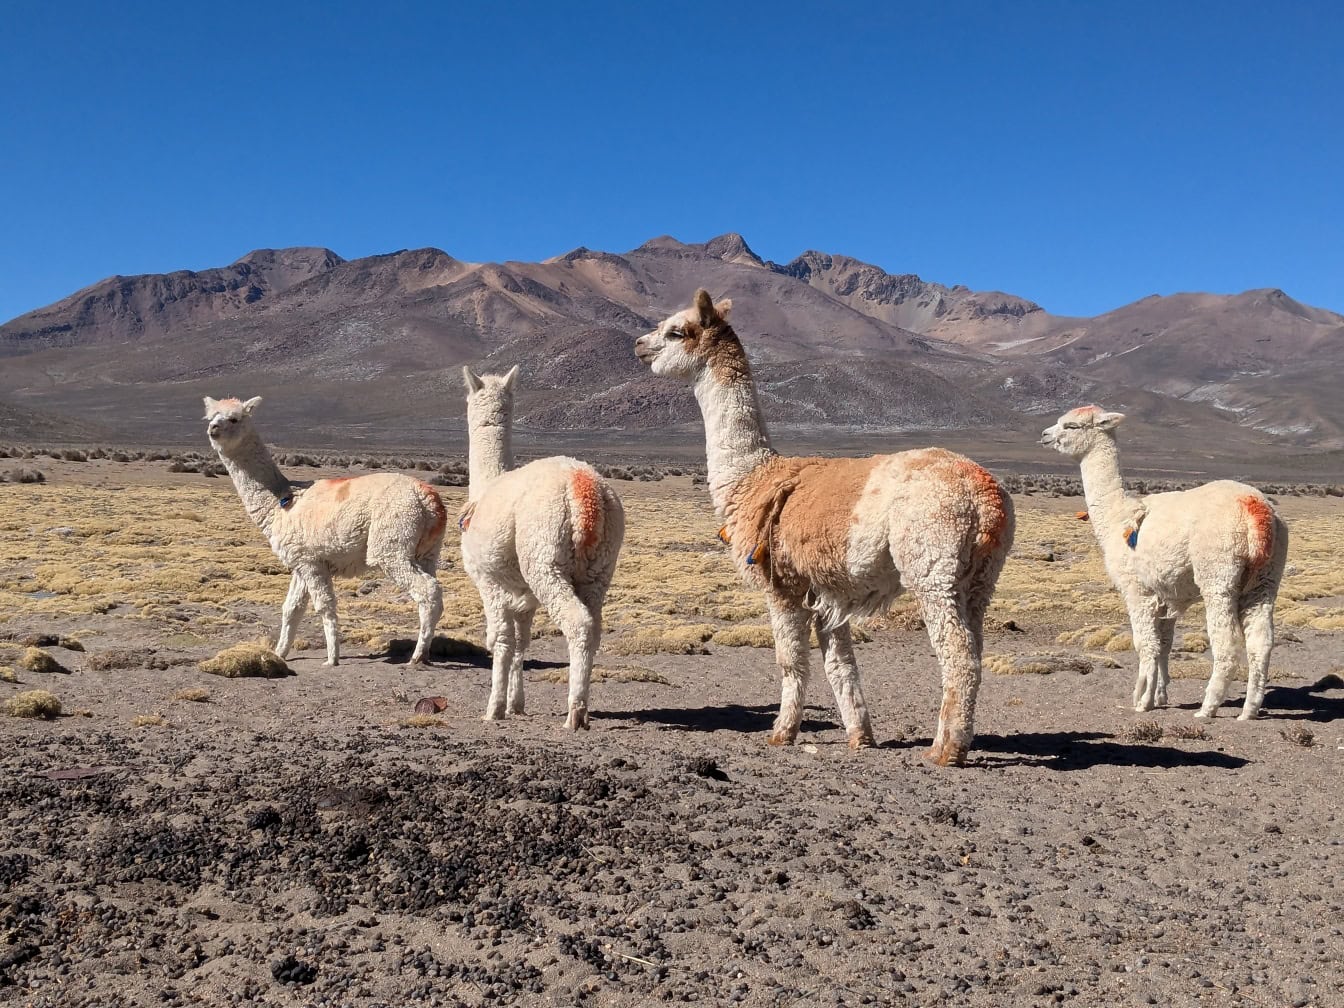 Un branco di alpaca (Lama pacos) una specie di camelide sudamericano, animali che si trovano in un deserto d’alta quota